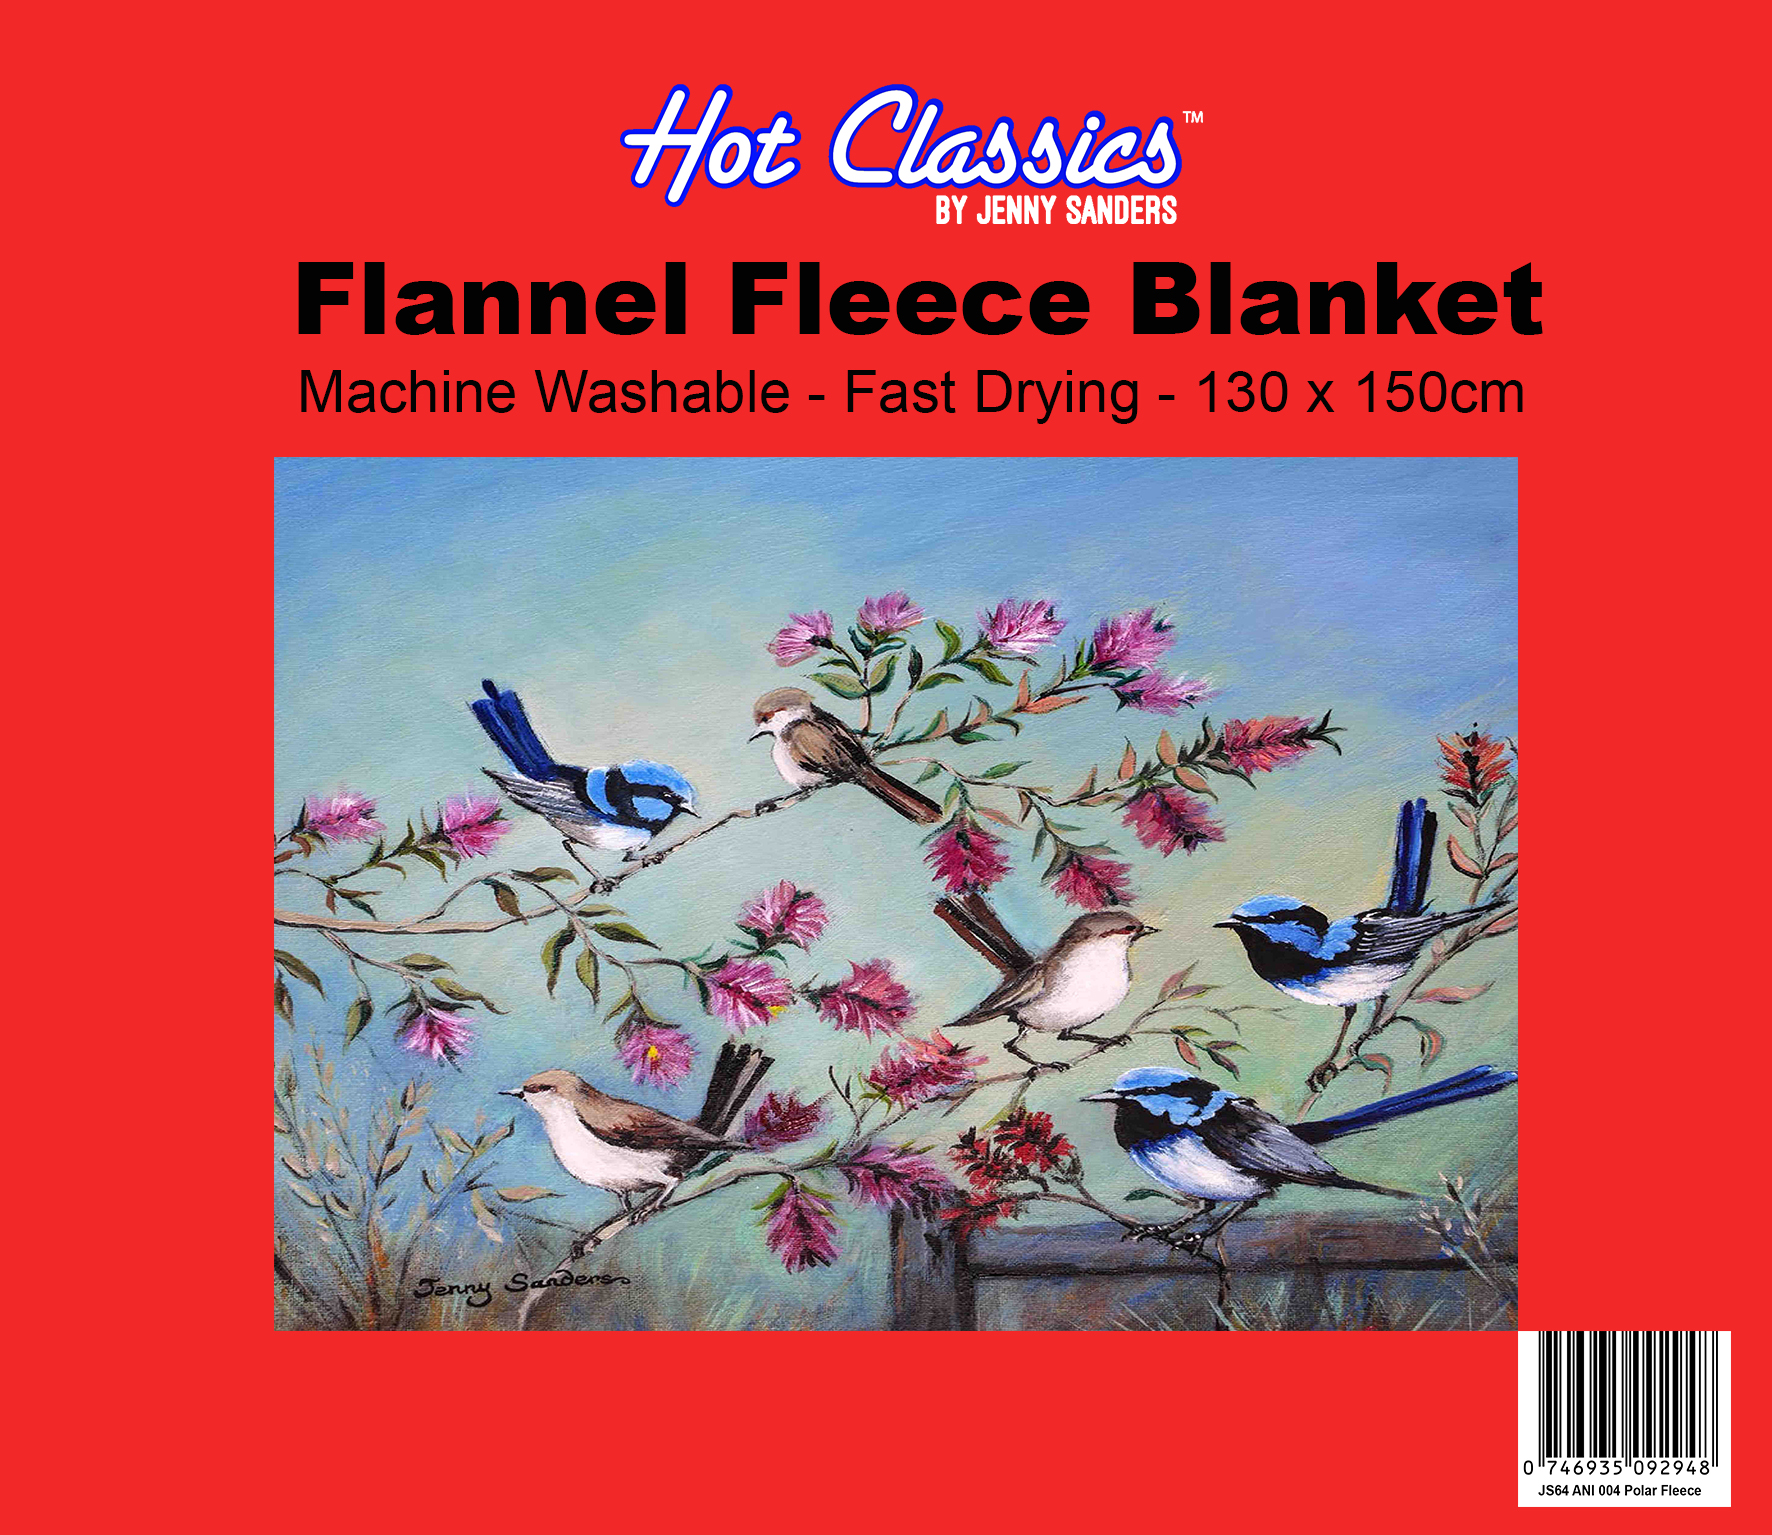 Blue Wren Flannel Fleece Blanket Art by Jenny Sanders